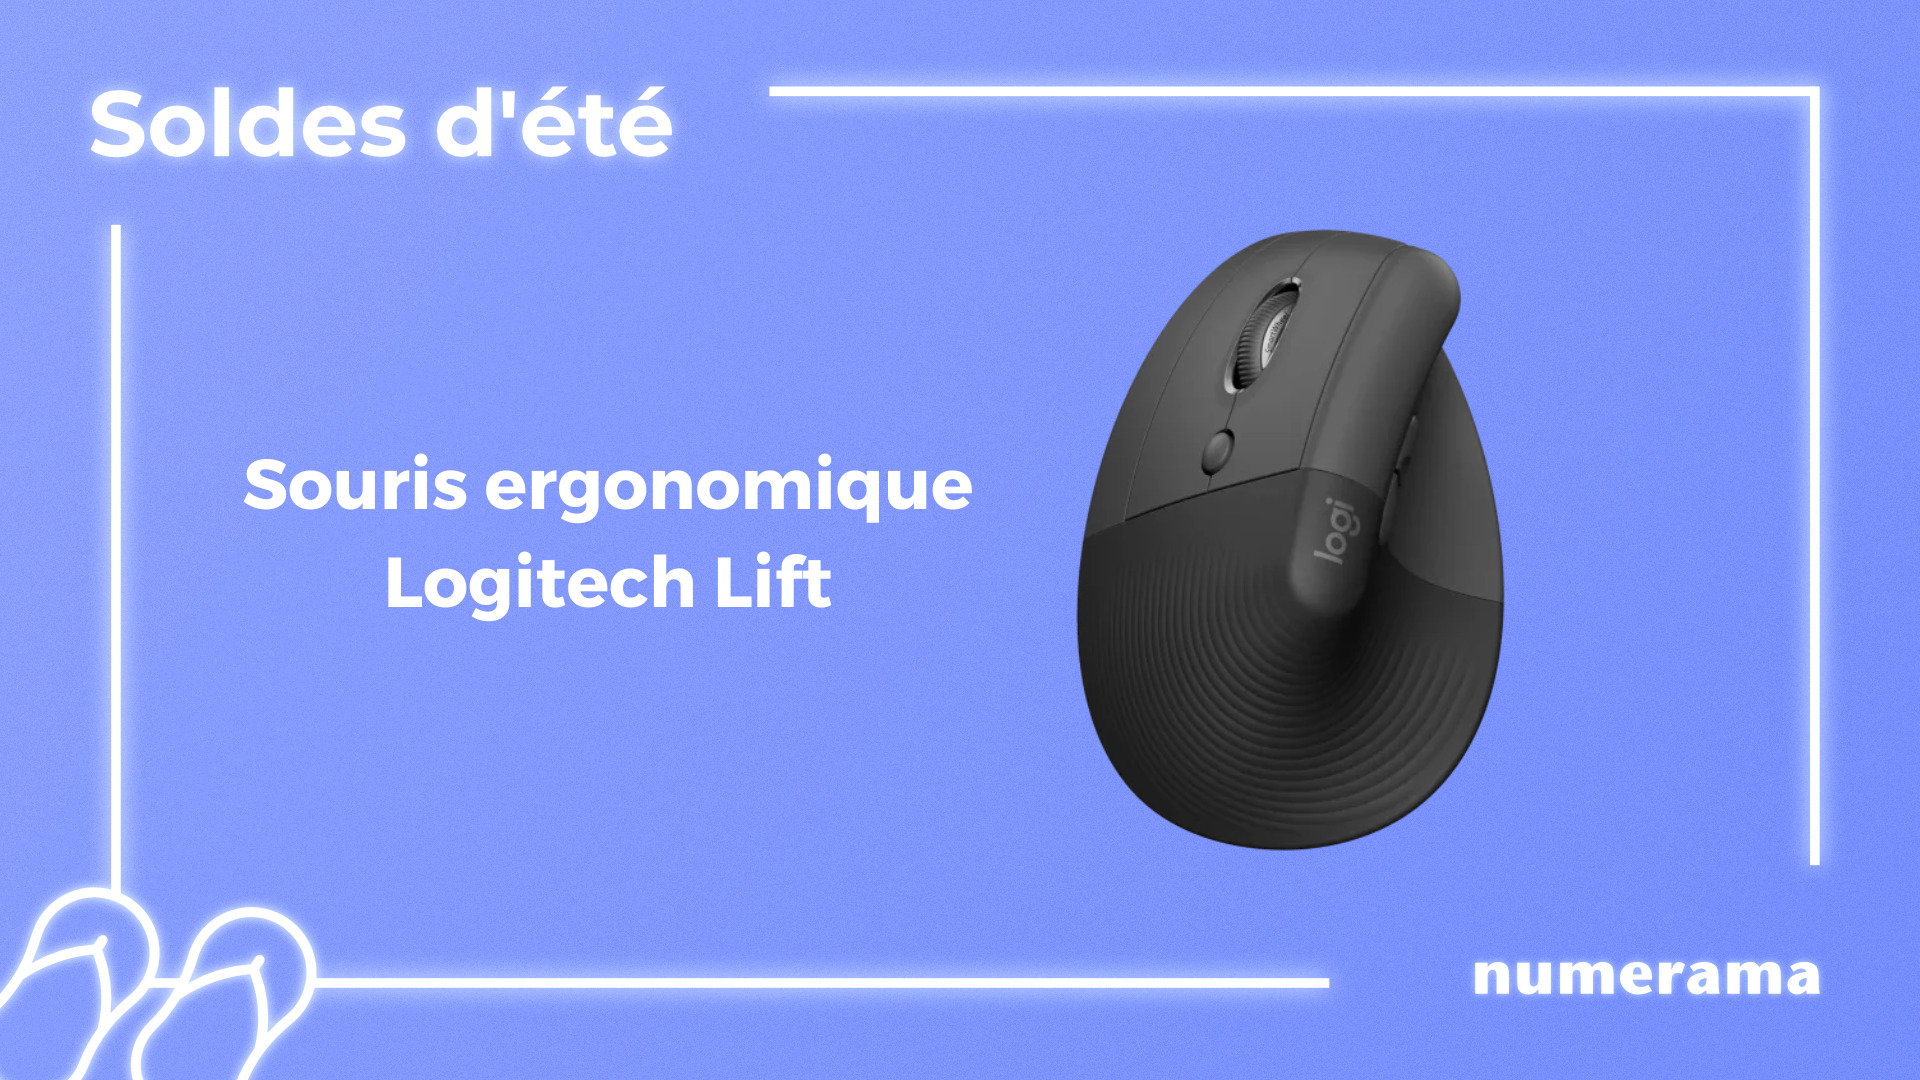 Cette souris ergonomique de Logitech est en promo pour les soldes - Numerama